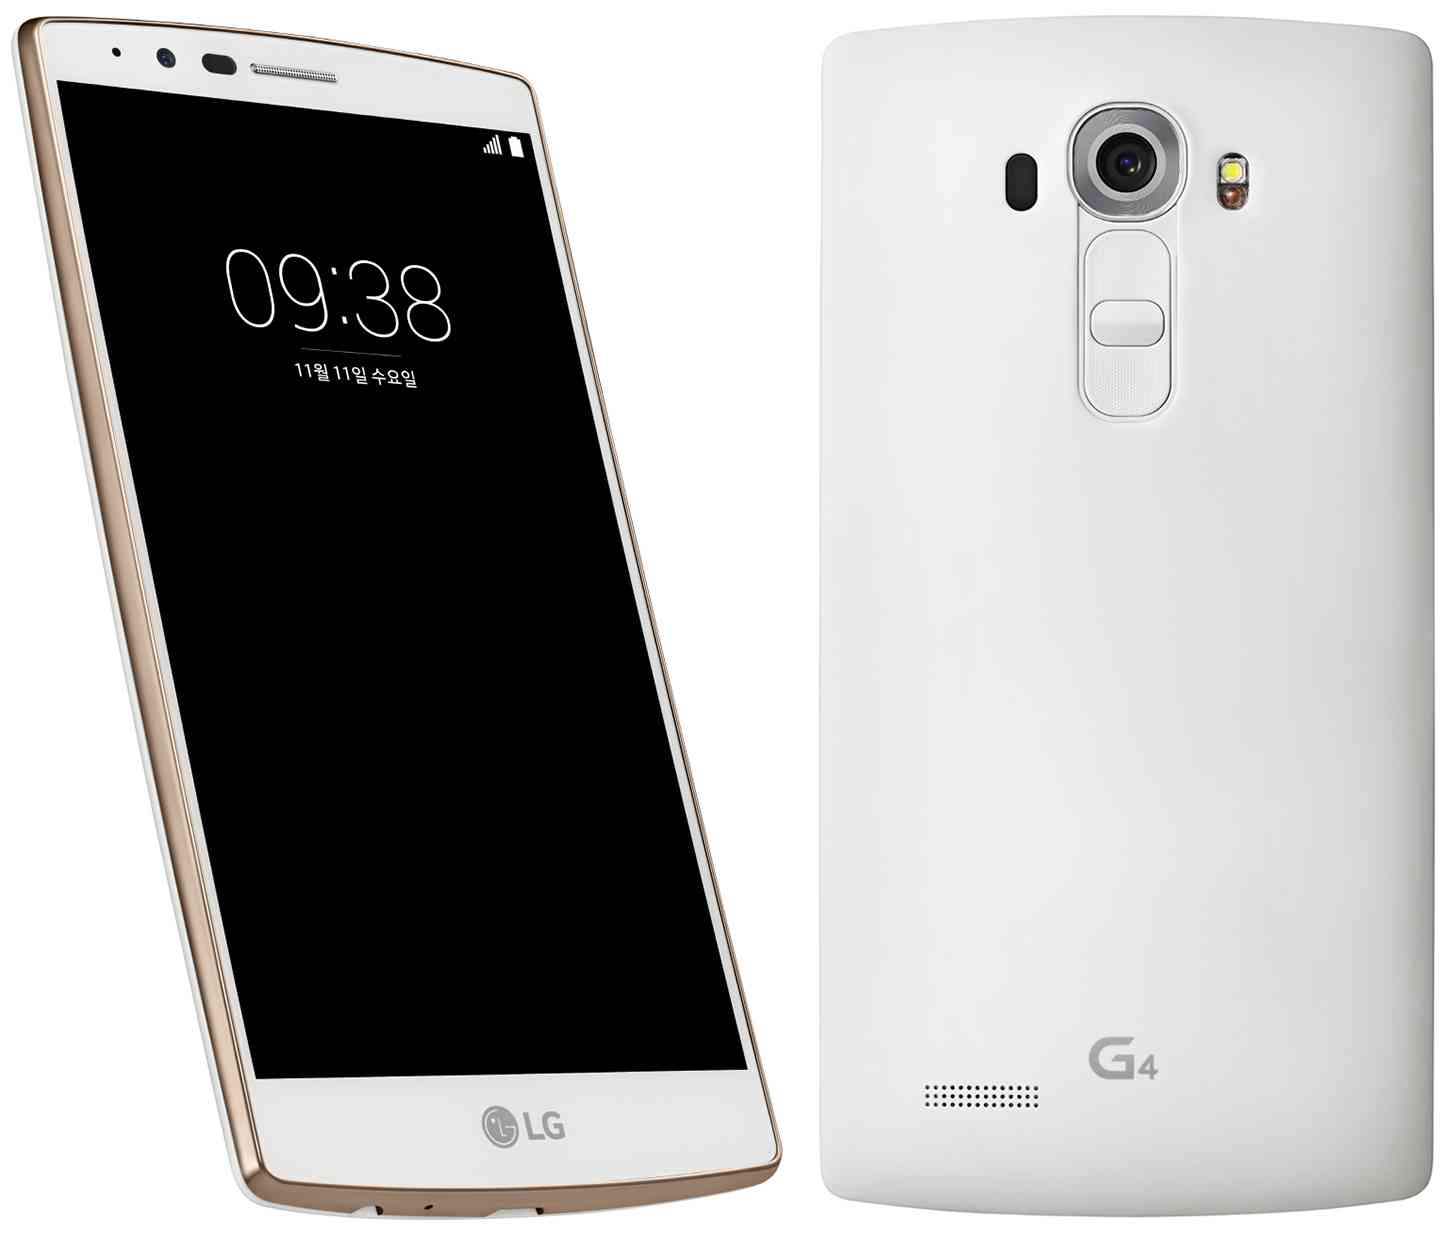 سبيتاني الوكيل الحصري في فلسطين: شركة ال جي تصدر النسخة البيضاء الذهبية اللون من الهاتف LG G4 في كوريا الجنوبية